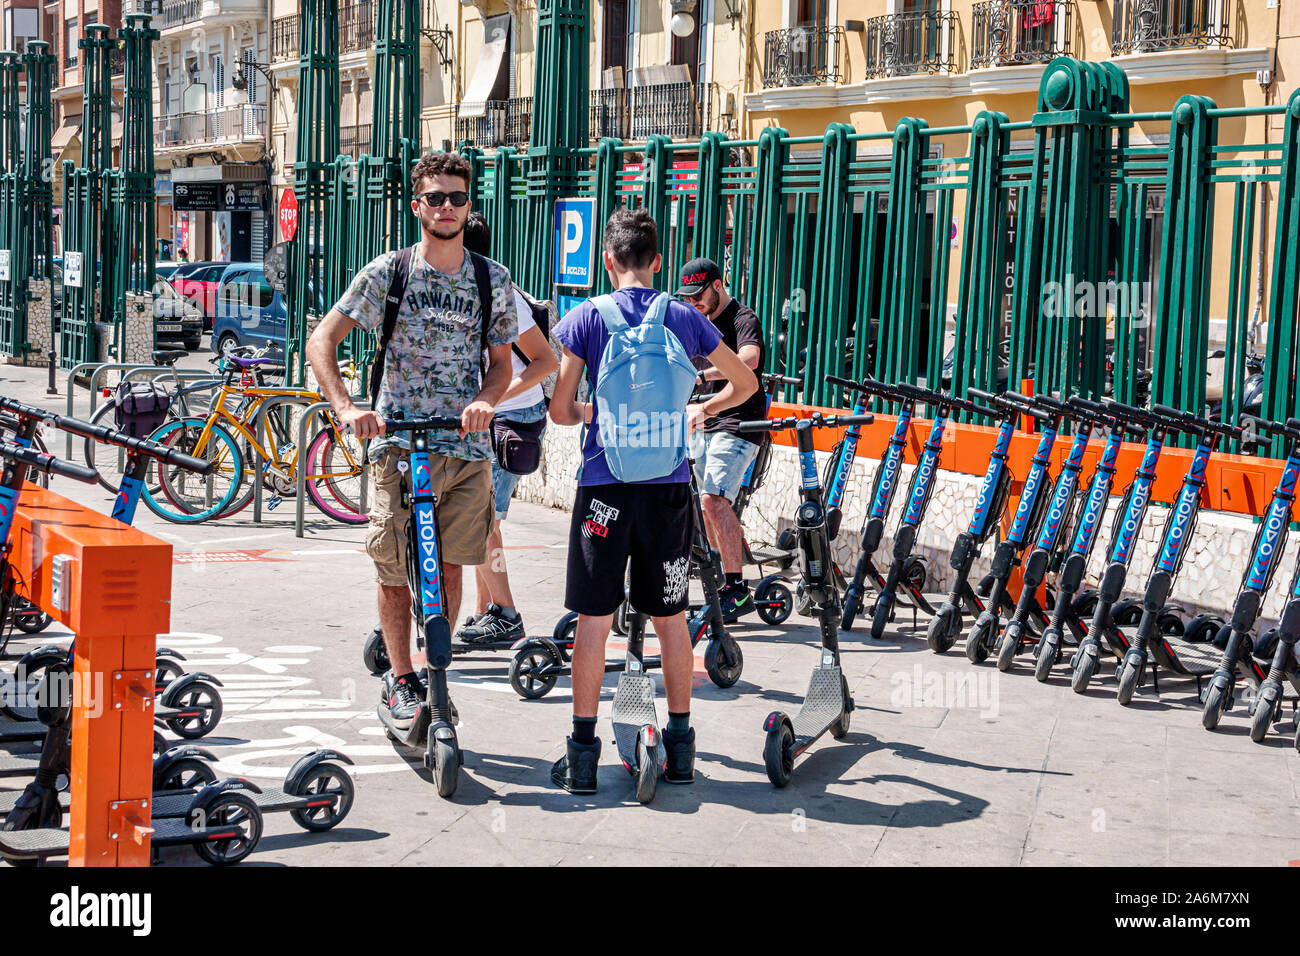 Valence Espagne, gare de Renfe, MOVO kick scooter partage service, location station d'accueil, homme, garçon, adolescent, amis, transport vert, ES190831049 Banque D'Images